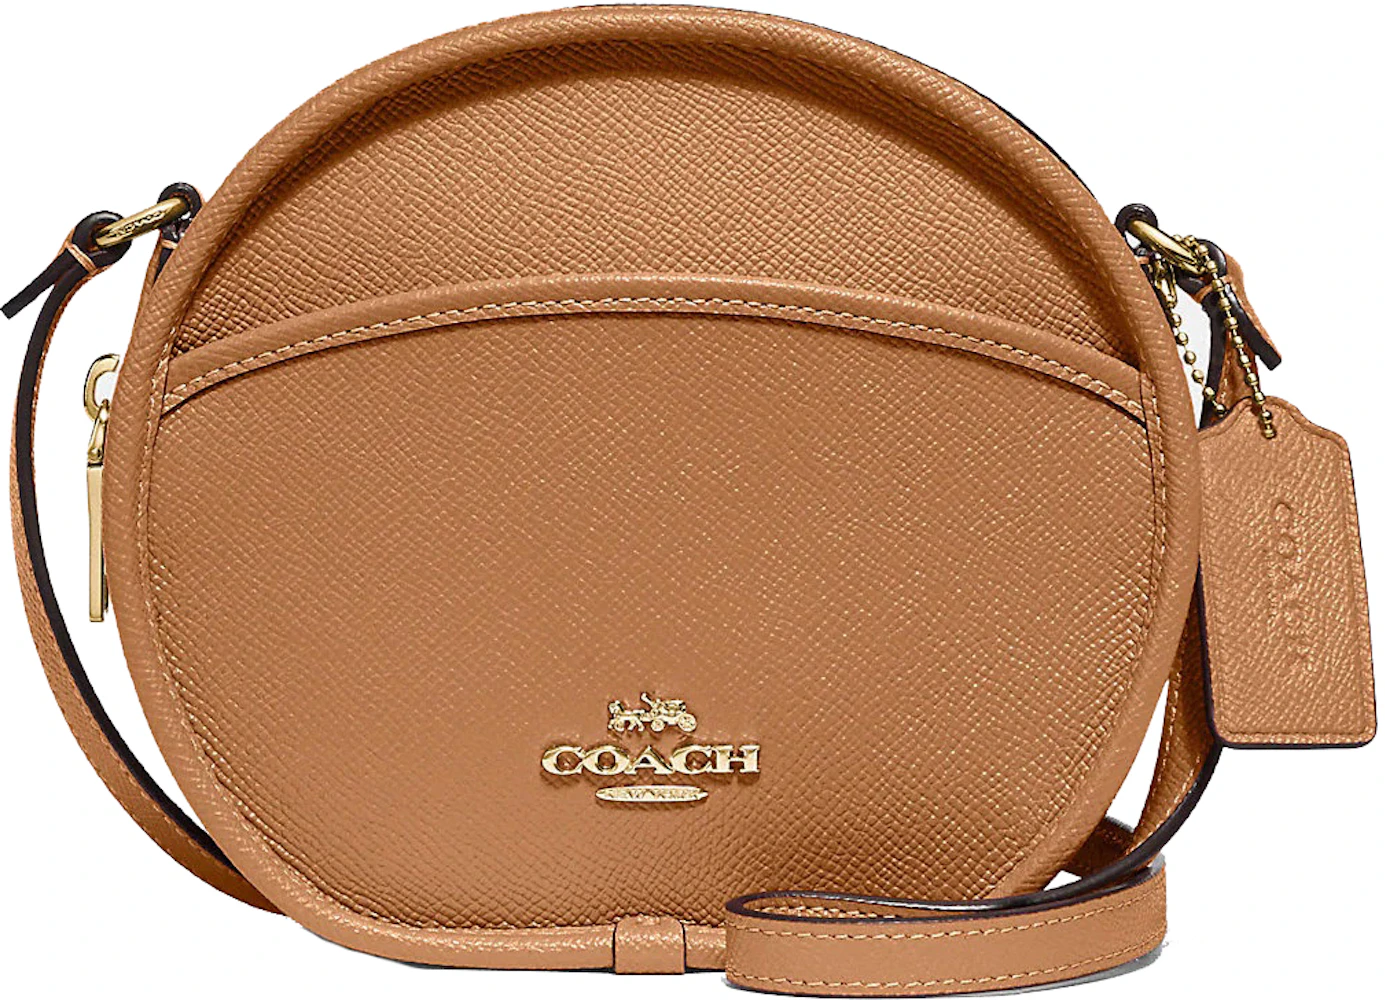 Coach Women's Bag - Tan